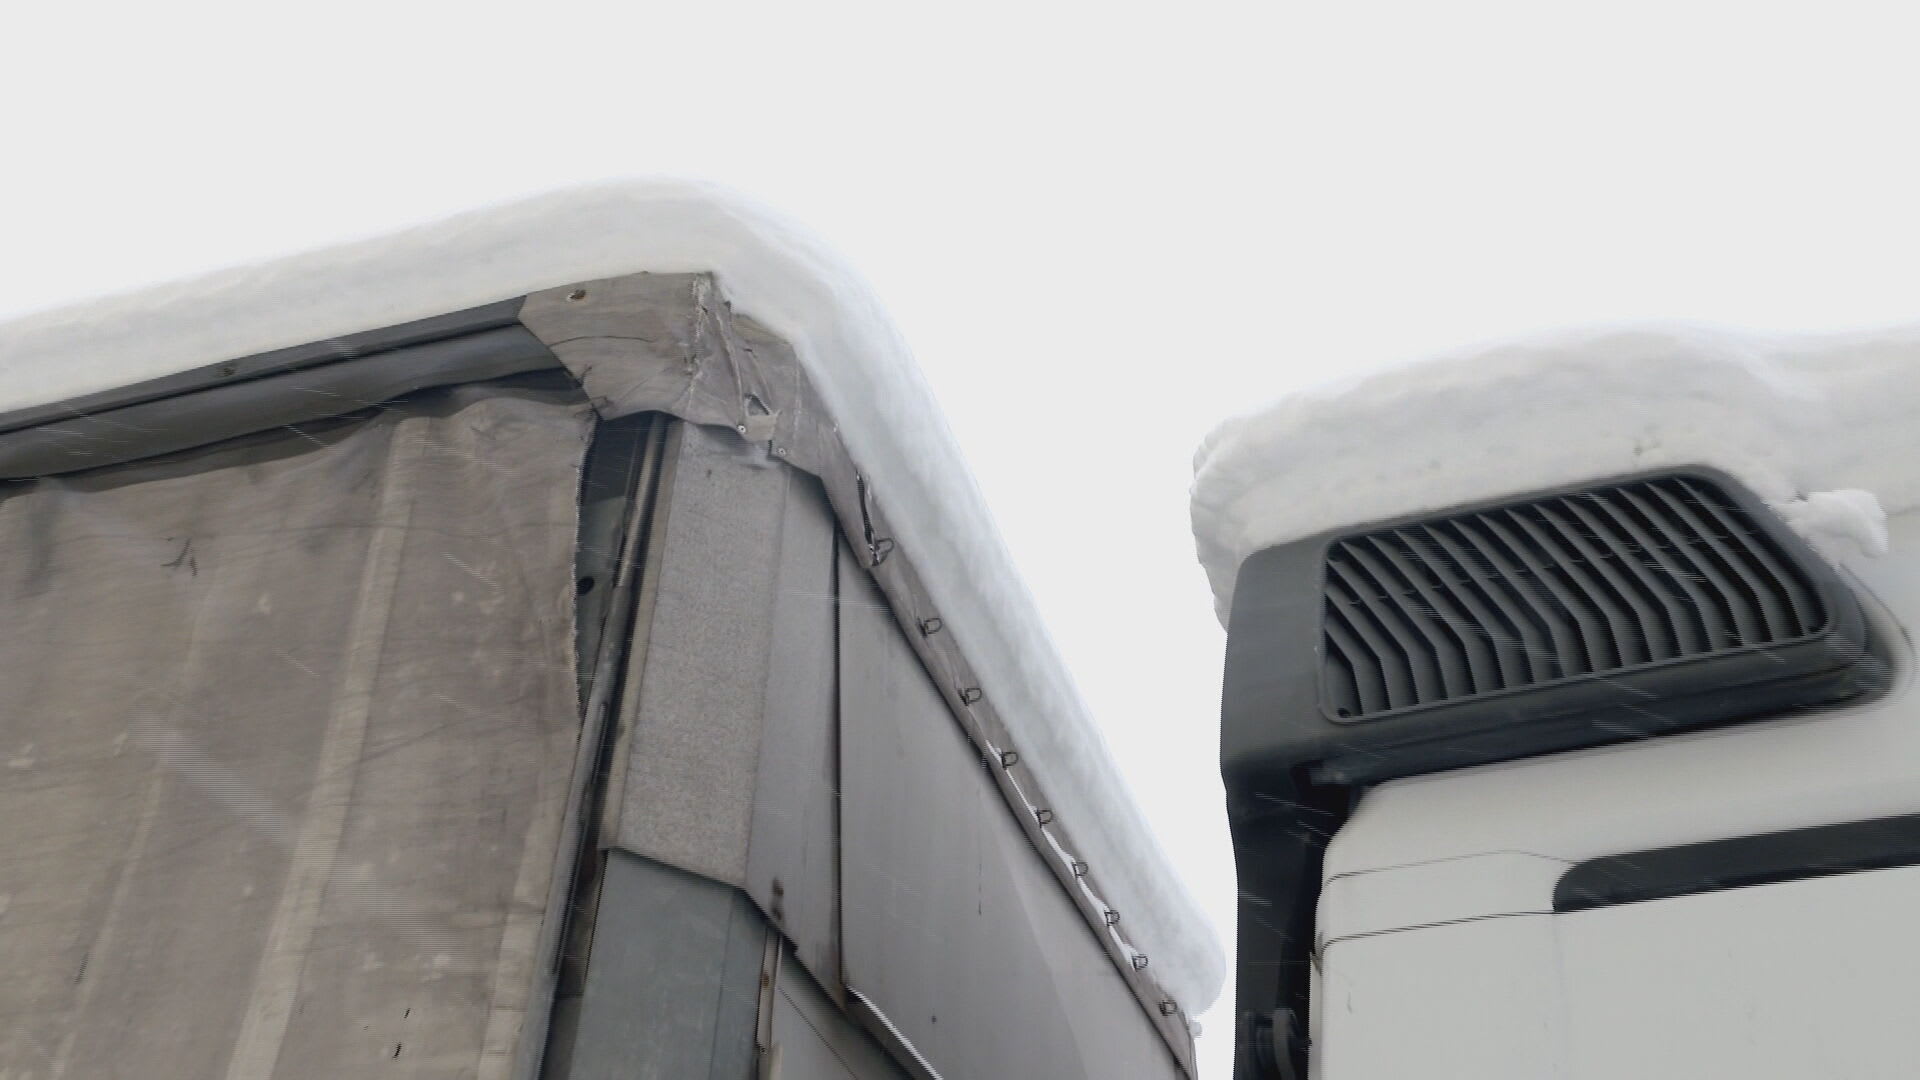 Led padající z kamionů může představovat pro řidiče velké nebezpečí.